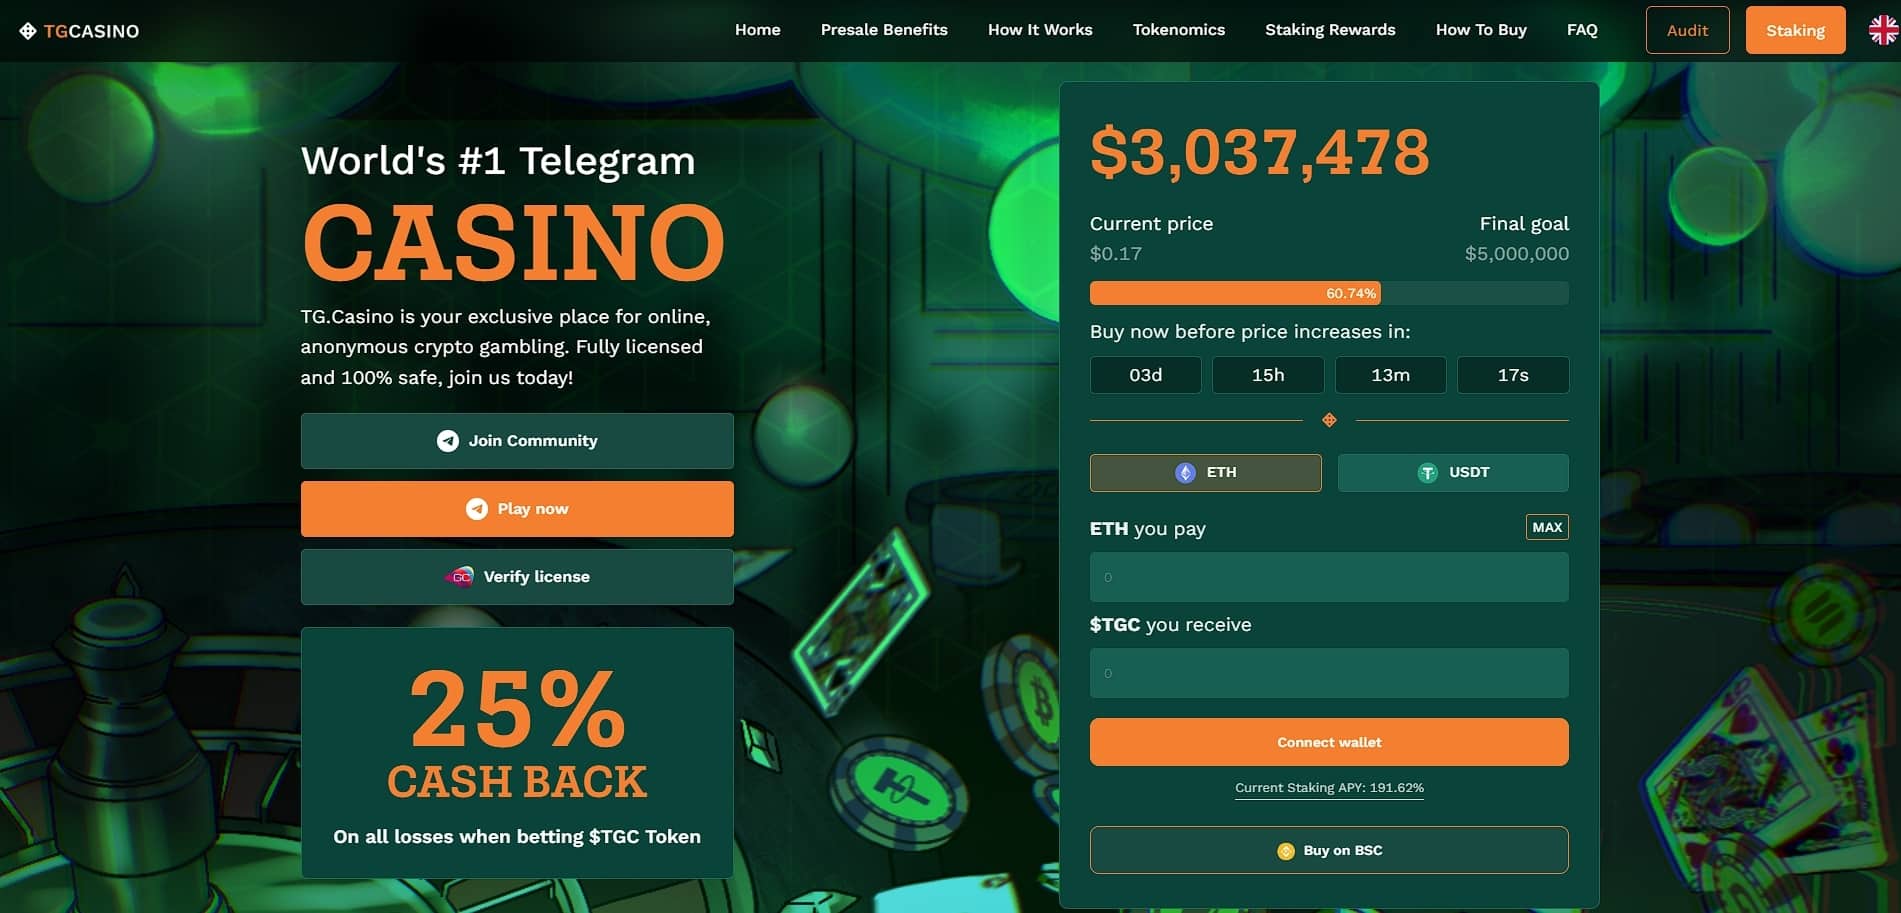 محللو الكريبتو يرشحون عملة التمويل القائم على الألعاب TGC من TG.Casino لتكرار نجاحات Rollbit بعد حصد بيعها المسبق مبلغ 3 مليون وتبقي 2 مليون دولار فقط لإتمامه